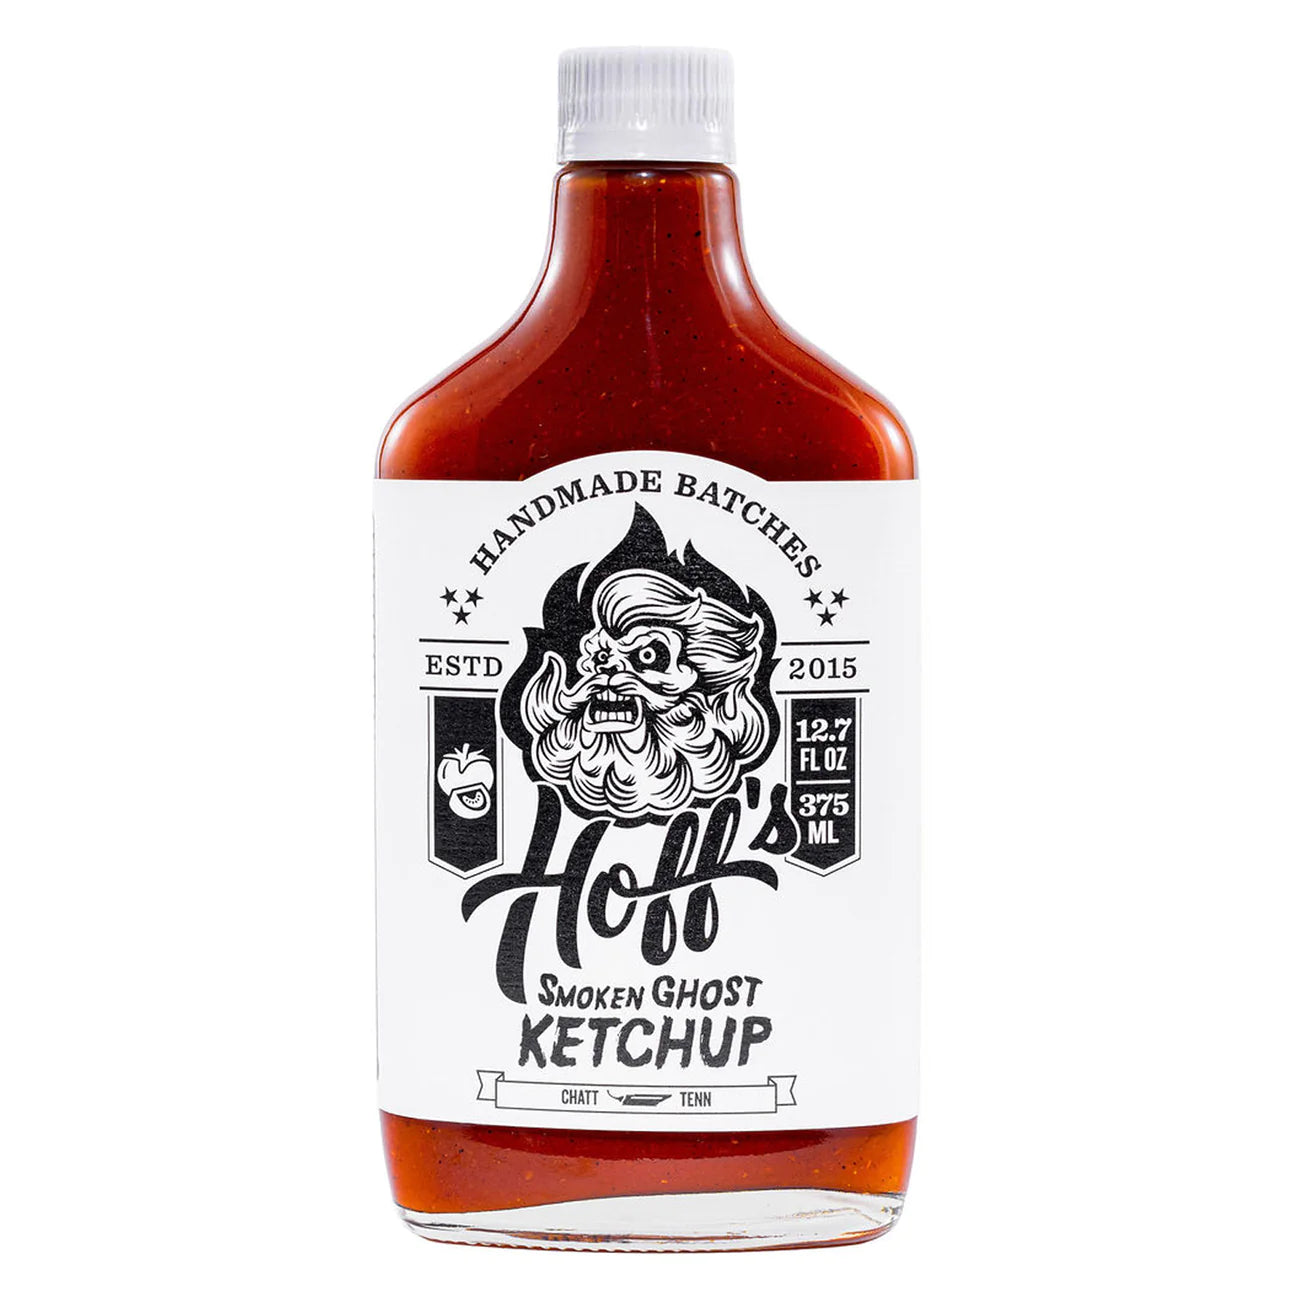 Smoken Ghost Ketchup